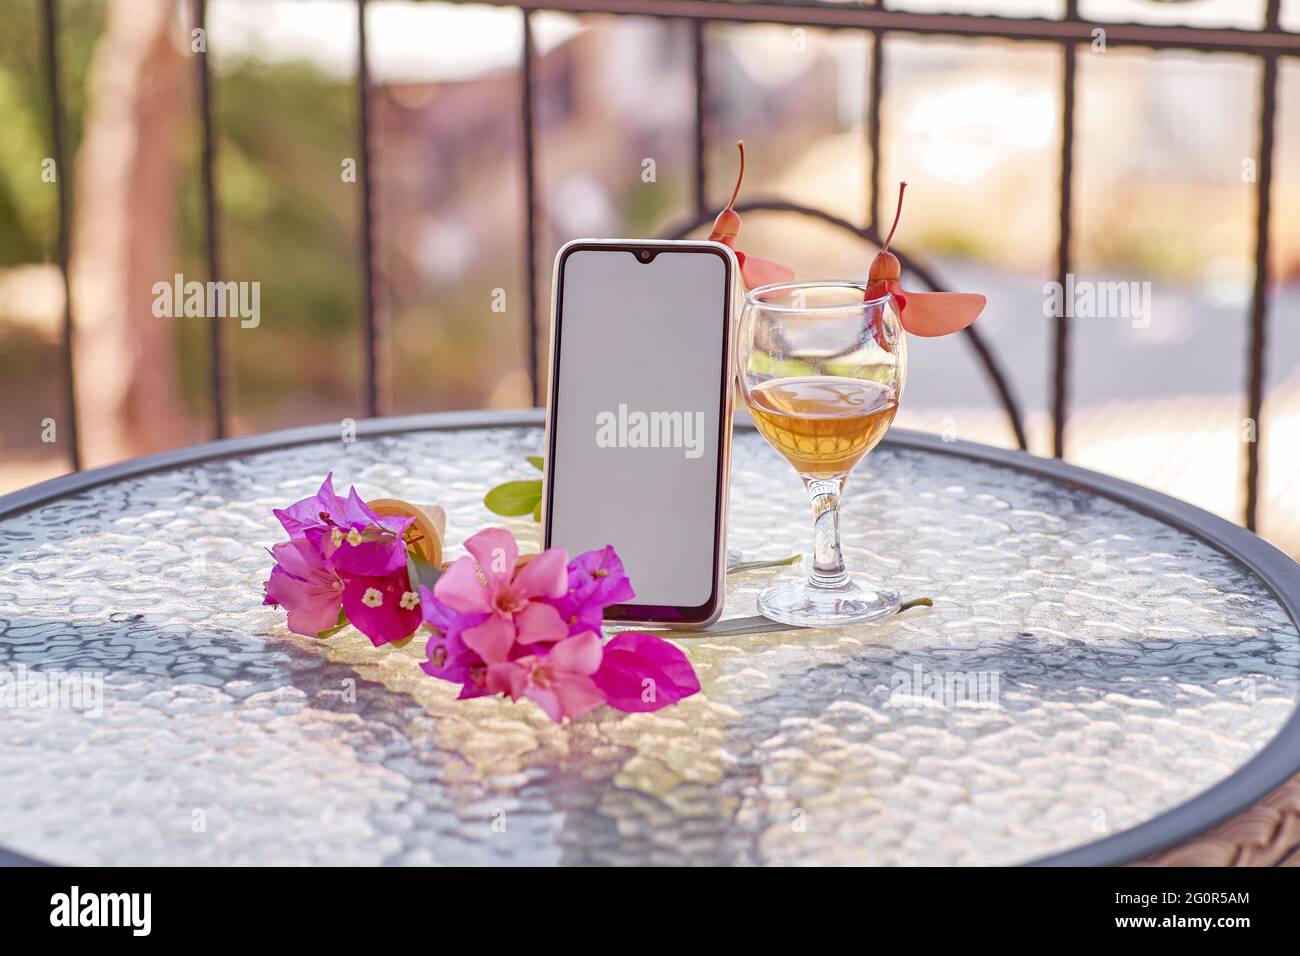 Modell eines mobilen Bildschirms mit einem Glas Wein, dekoriert mit frischen, hellen, surrealen Blumen im Sommer. Femininer, flacher Lay. Speicherplatz kopieren. Sommermodell. Hochwertige Fotos Stockfoto